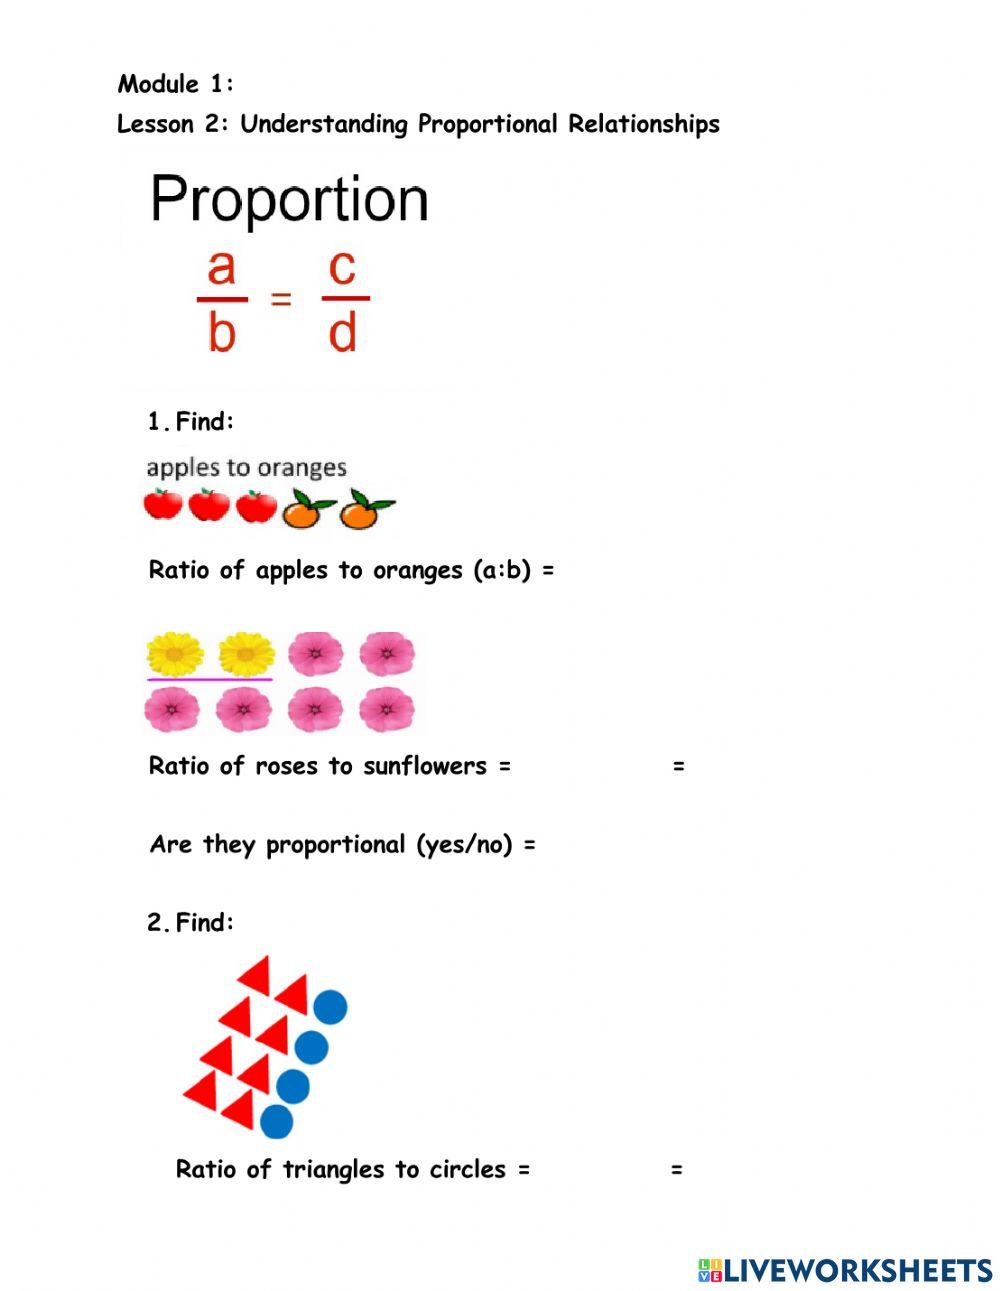 Module 1 Lesson 2 Proportion